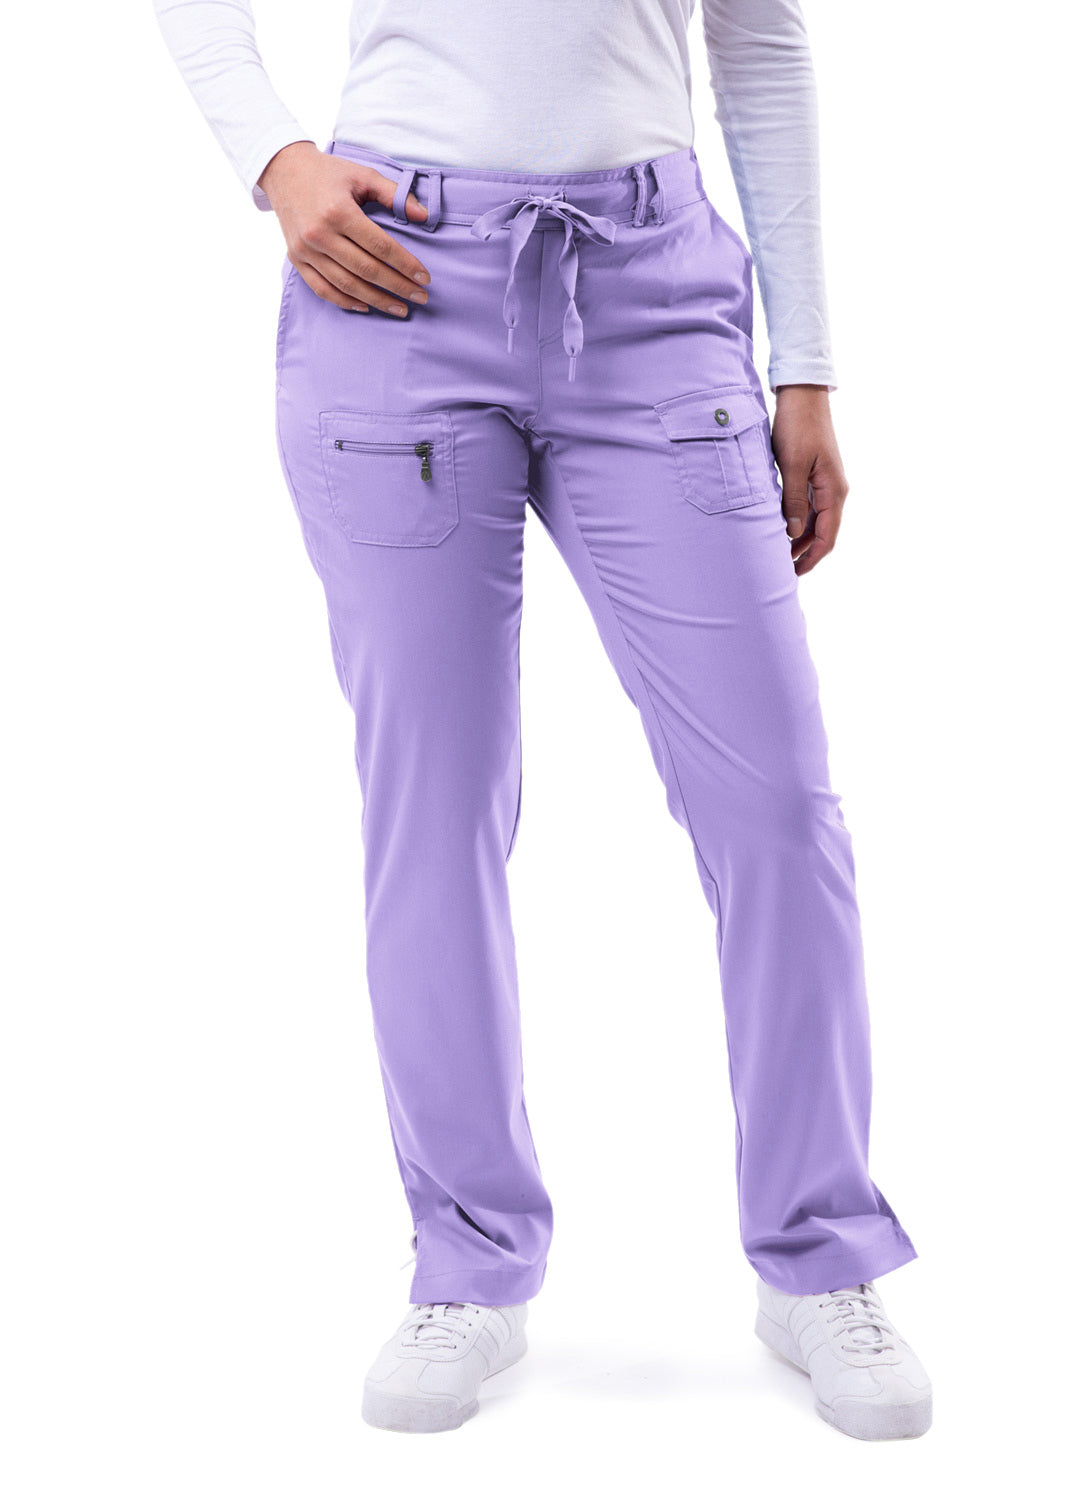 ADAR Pro Women's Slim Fit 6 Pocket Pant Tall